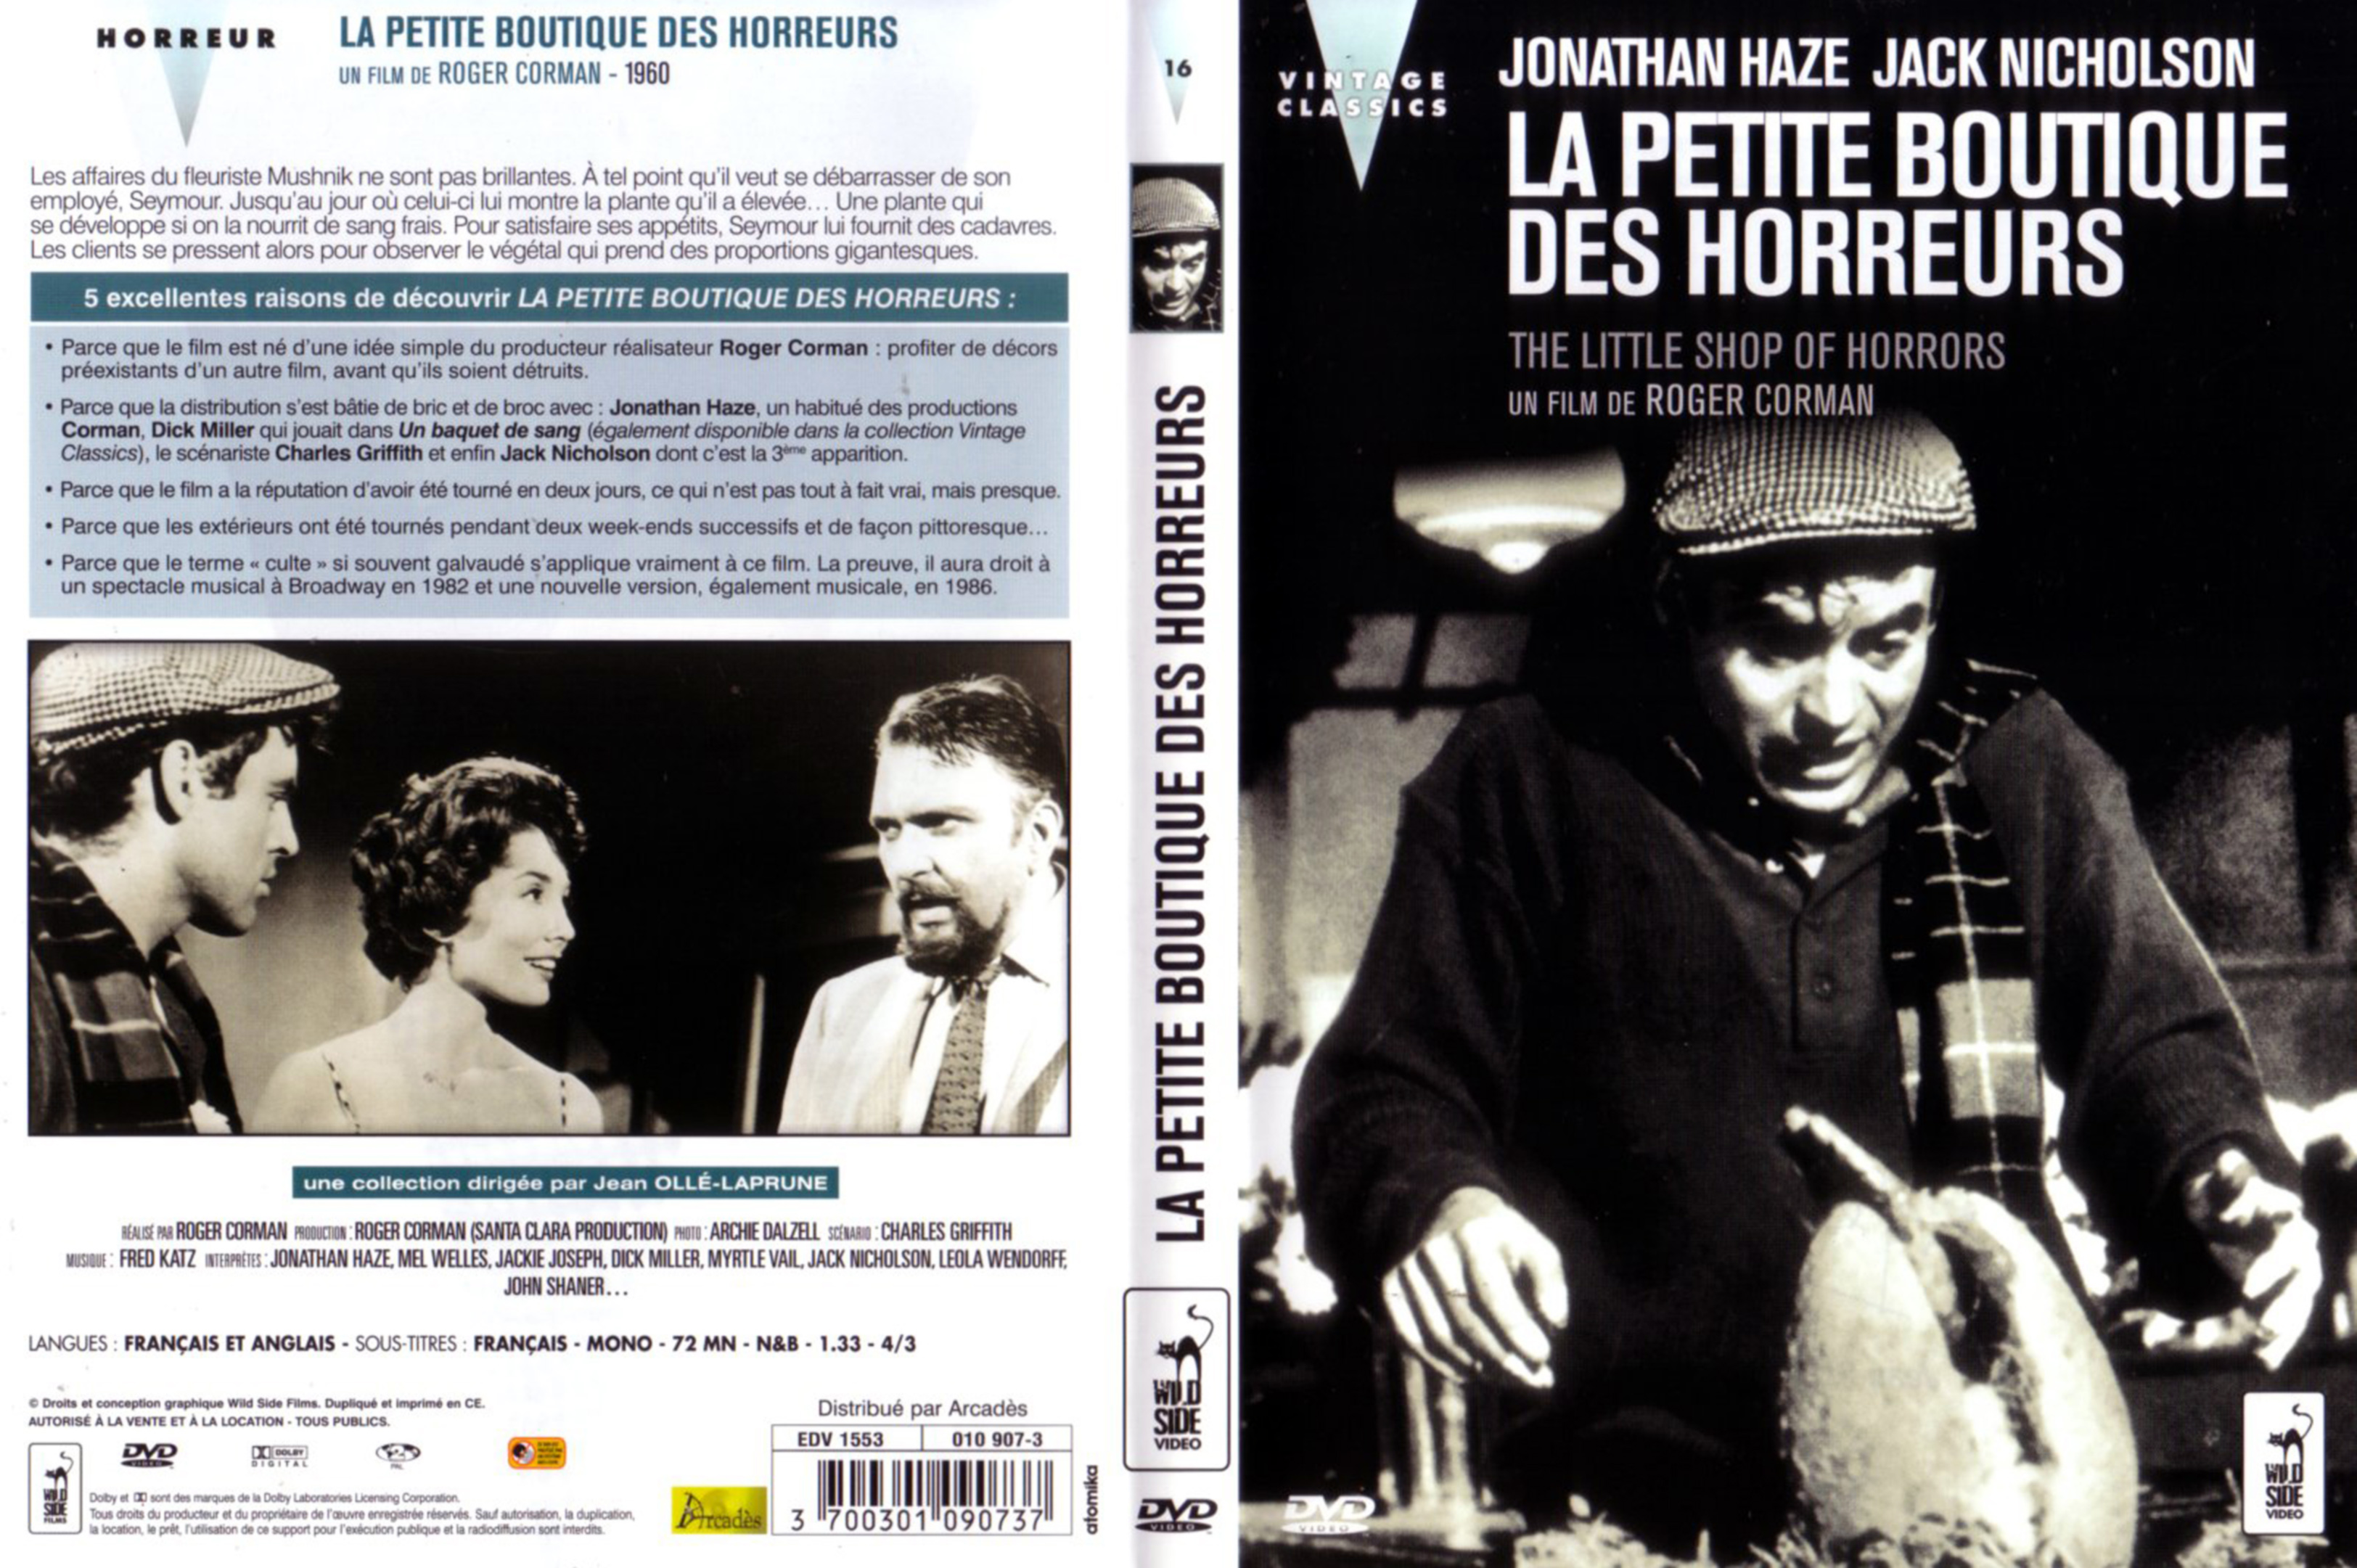 Jaquette DVD La petite boutique des horreurs (1960) v2